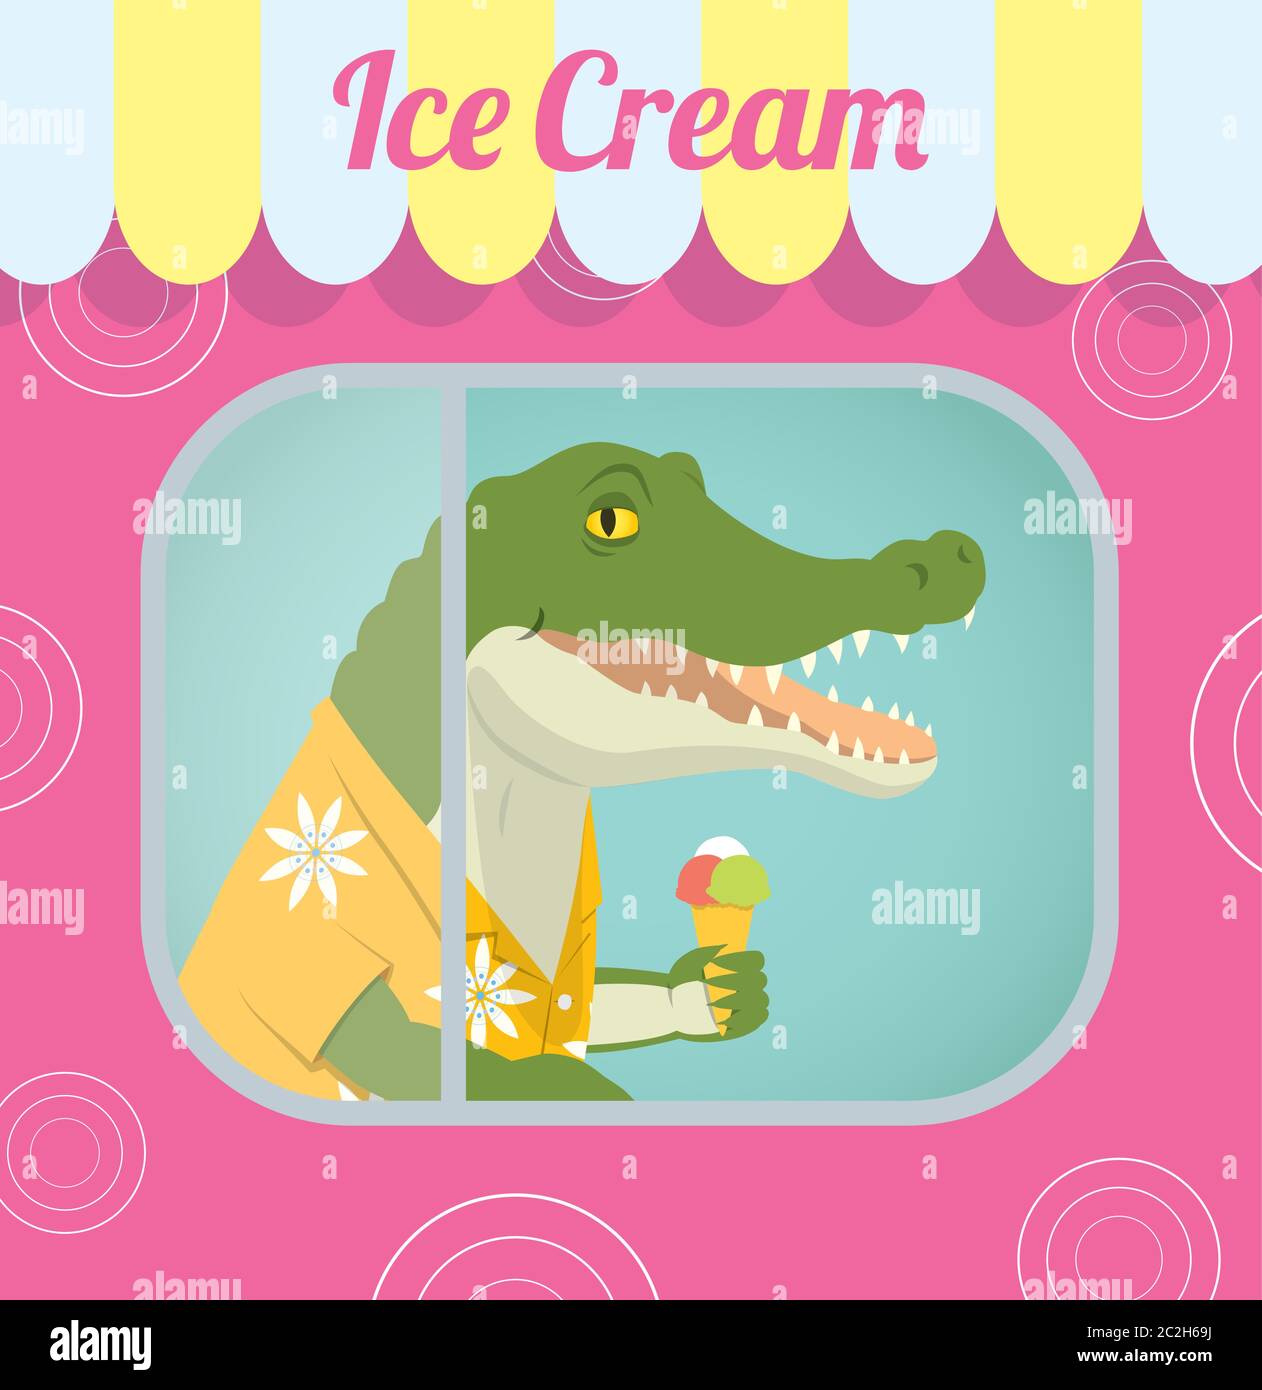 Illustration vectorielle rétro d'un crocodile dans une chemise Aloha, debout derrière la fenêtre, à l'intérieur d'une remorque vendant de la crème glacée. Dans le fichier eps, vous pouvez trouver Illustration de Vecteur